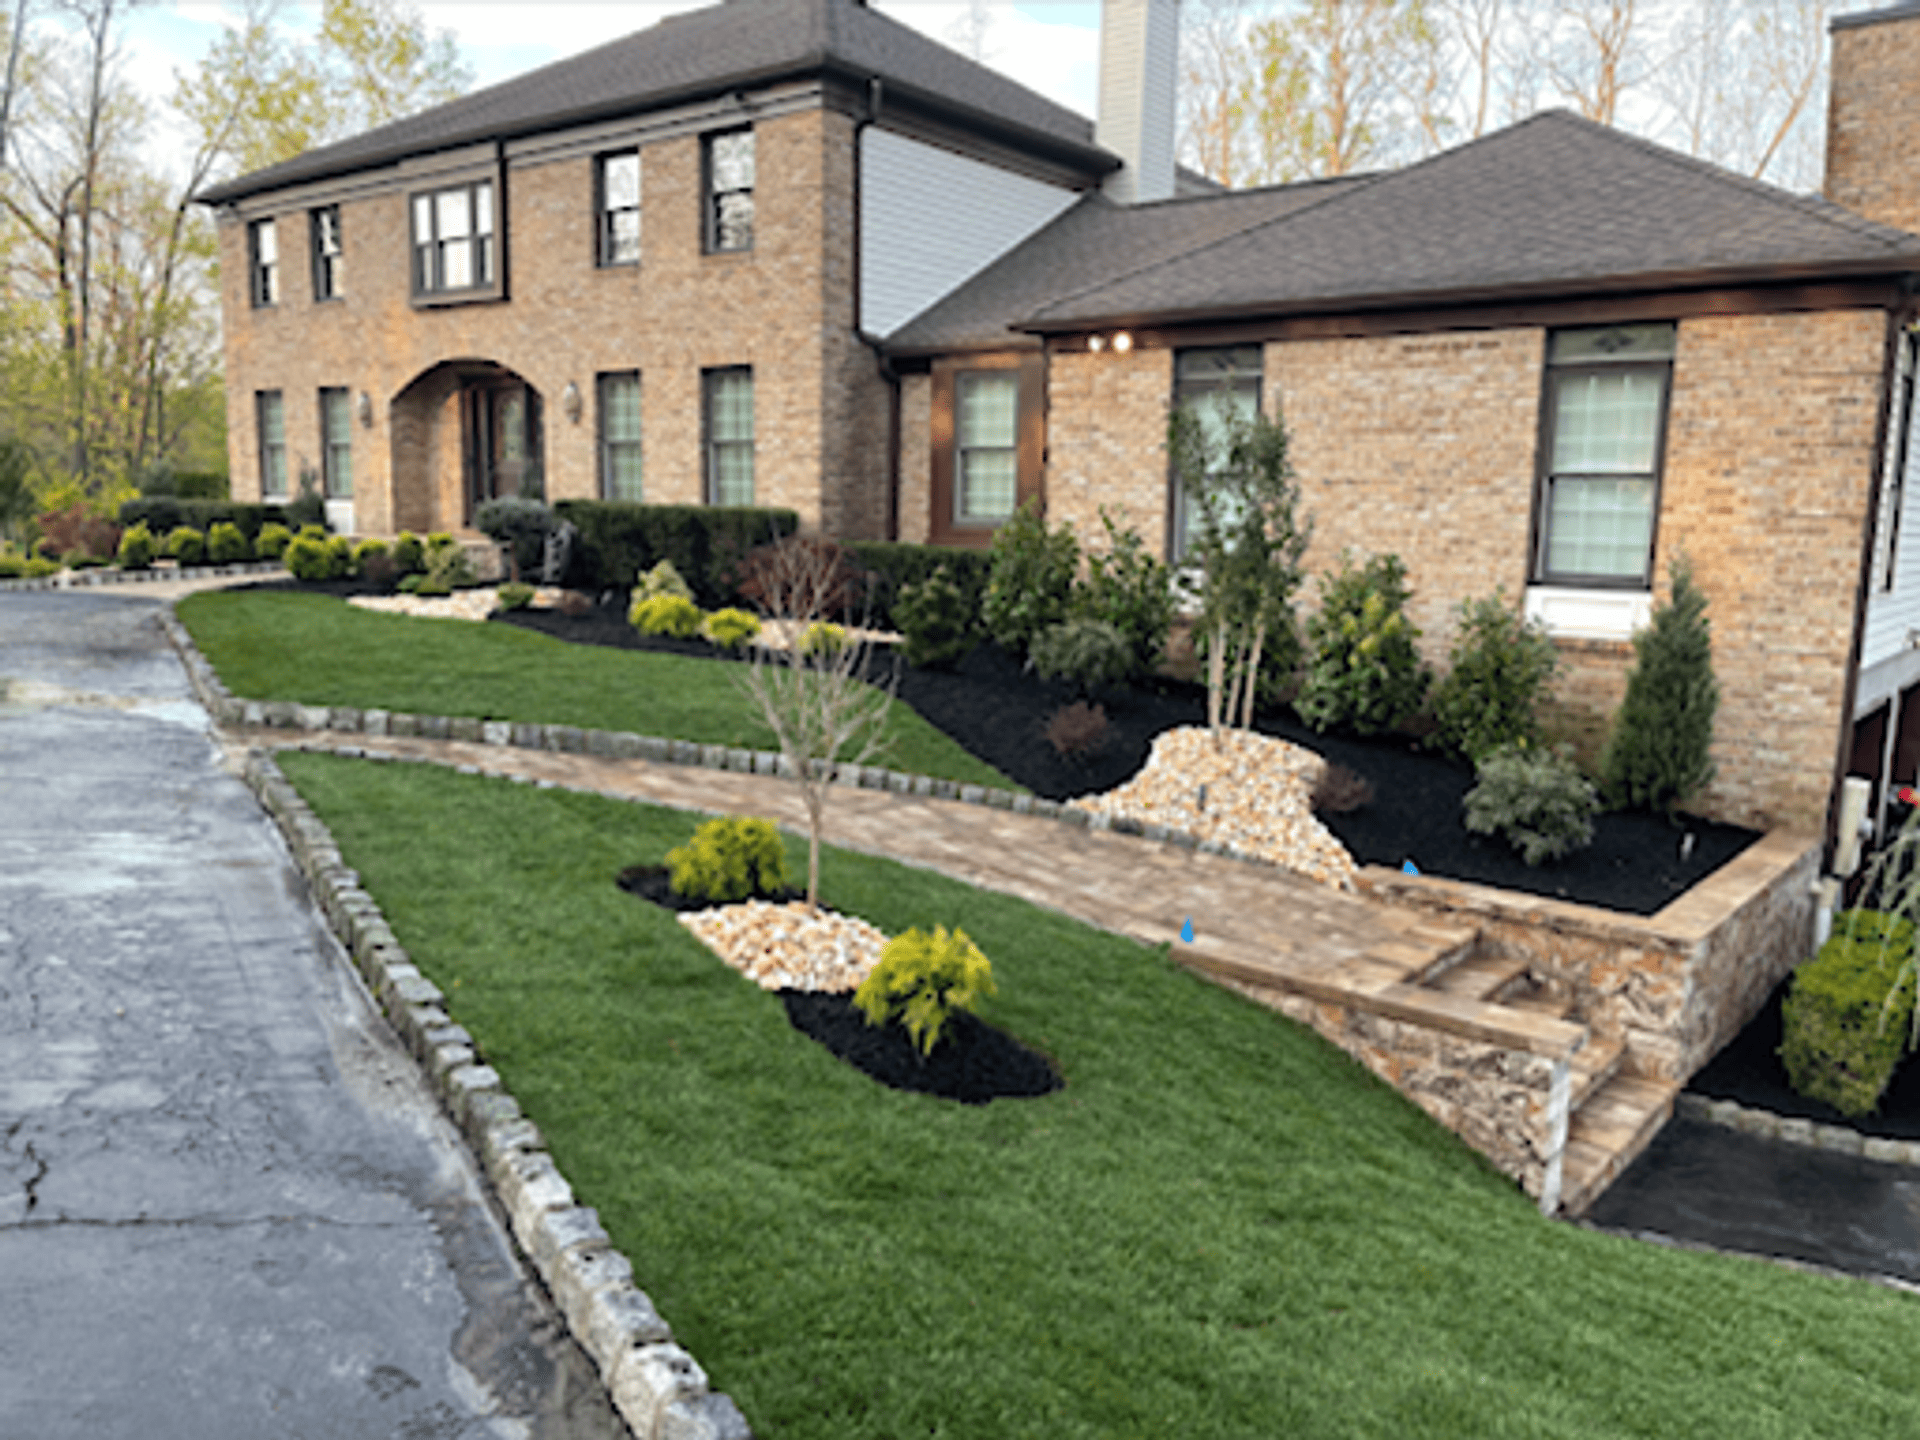 David's Lawn & Landscape Design - Manalapan Township, NJ, US, best landscapers near me